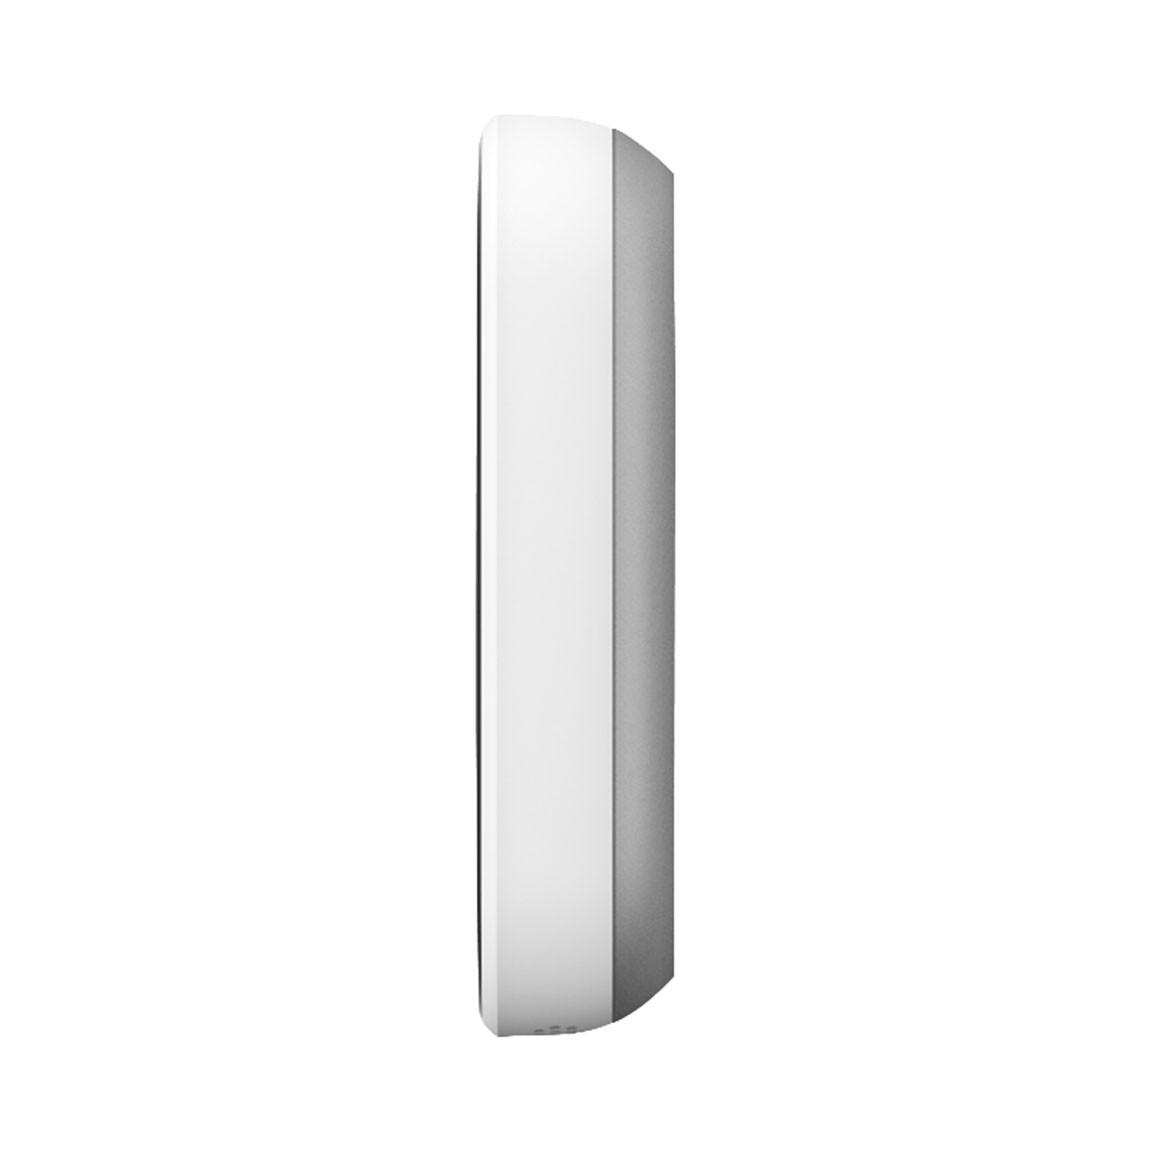 Google Nest Doorbell (Mit Kabel) - smarte Türklingel Produkt von der Seite